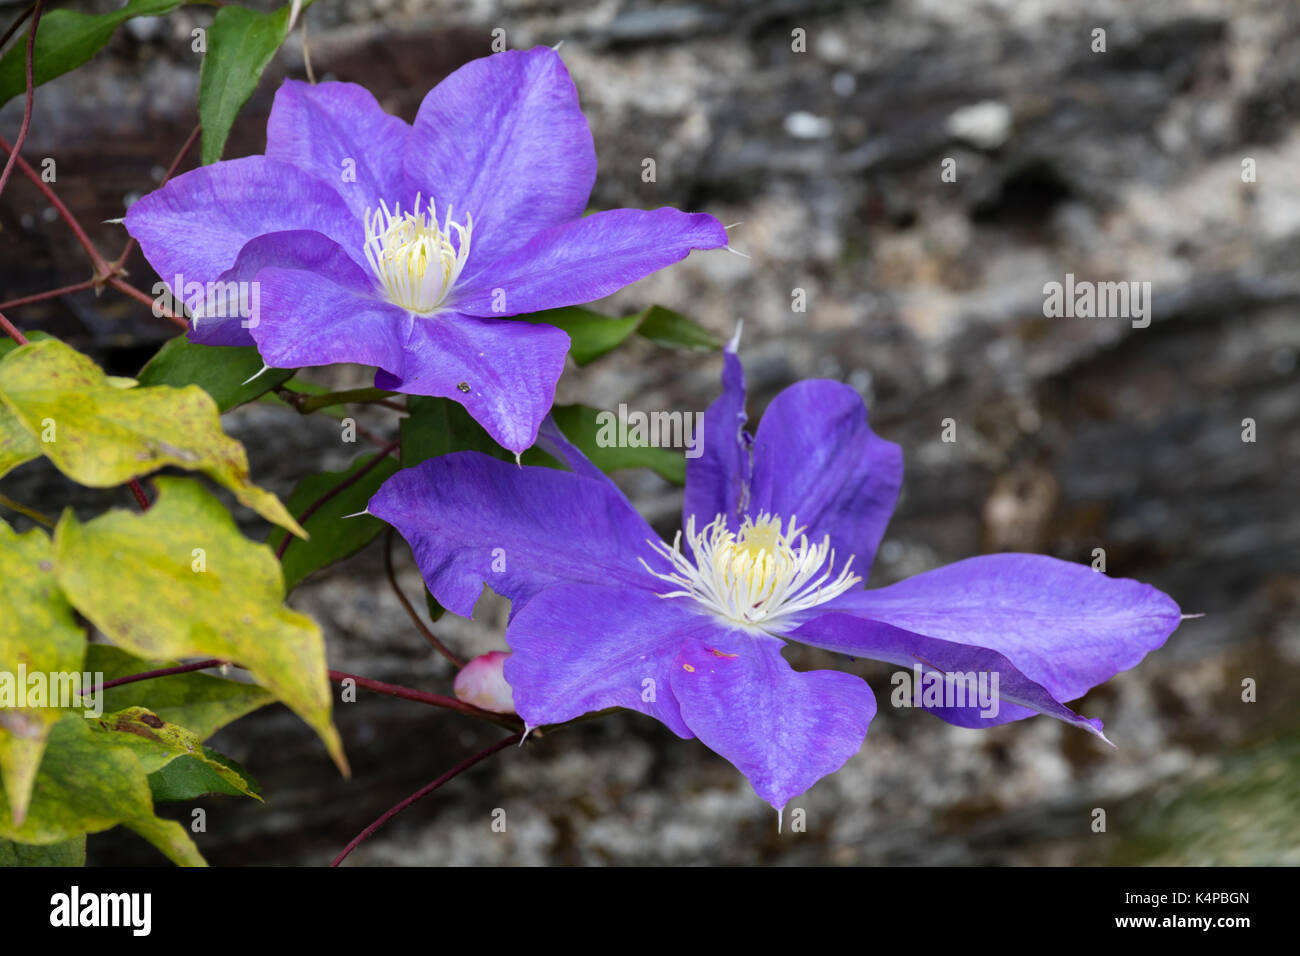 Lare, blaue Blumen Der winterharte Kletterpflanze, Clematis 'General Sikorski', während es später Sommer Blütezeit genommen Stockfoto